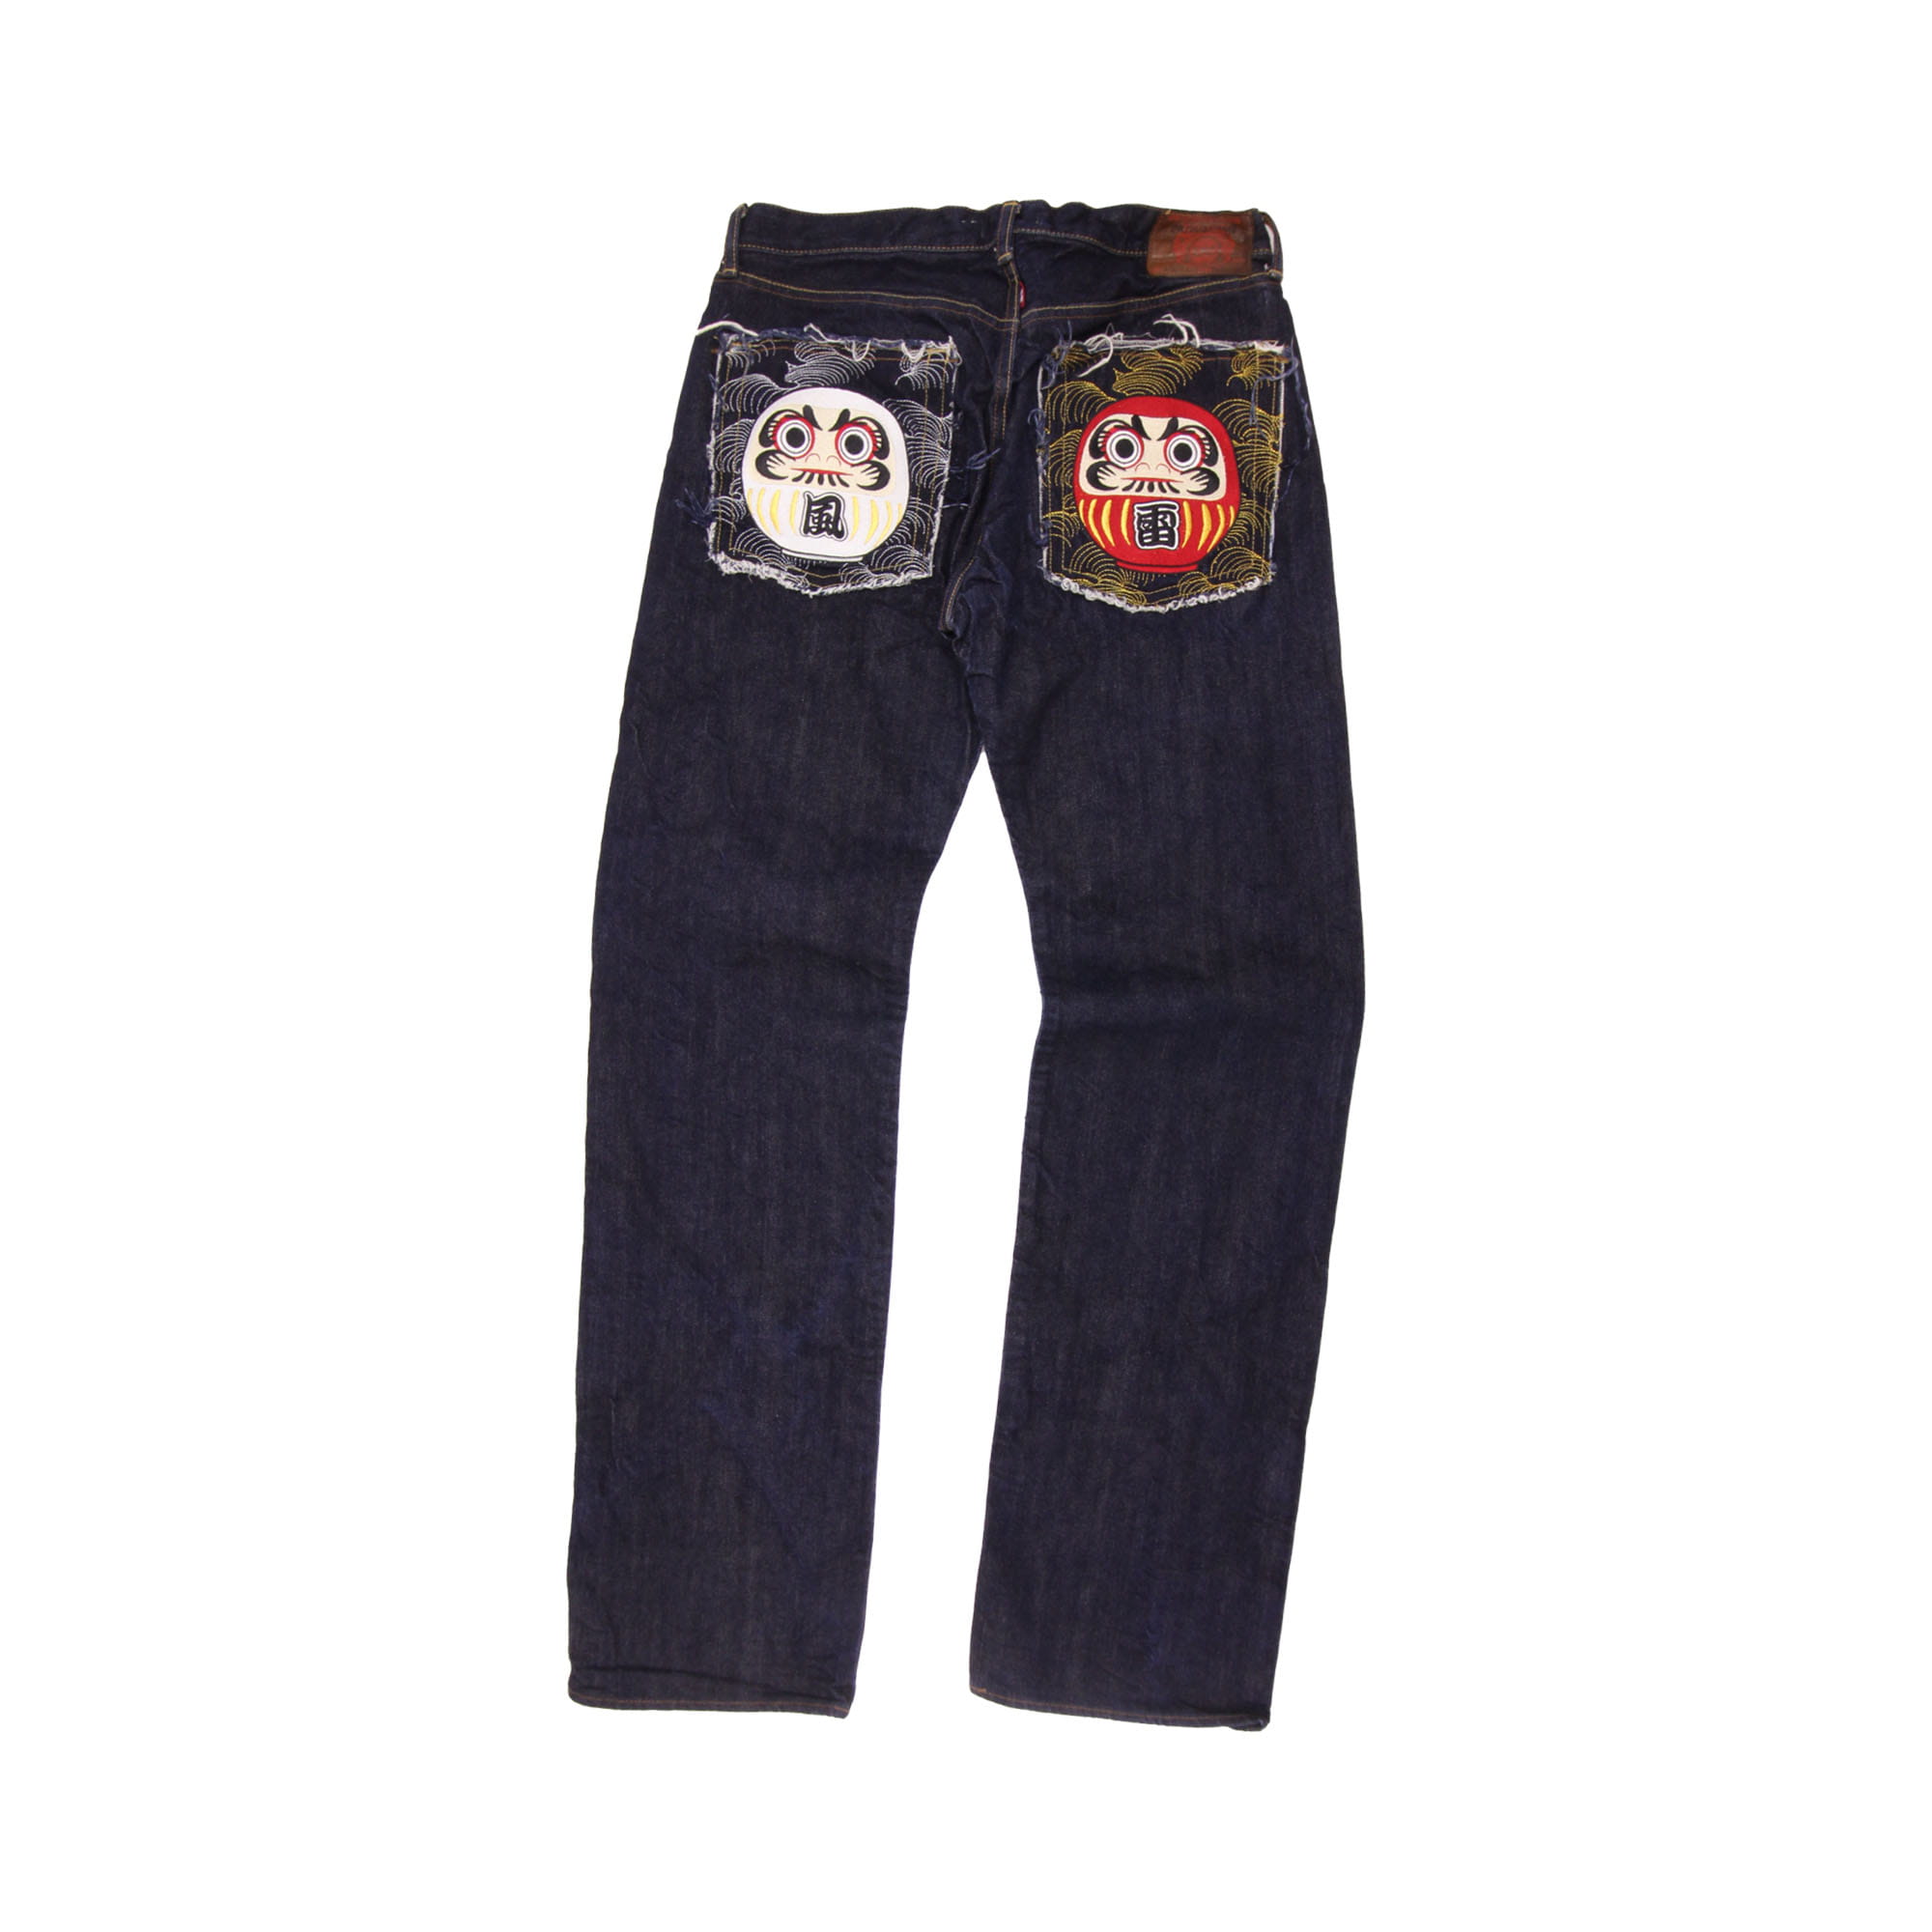 RMC Jeans - W36